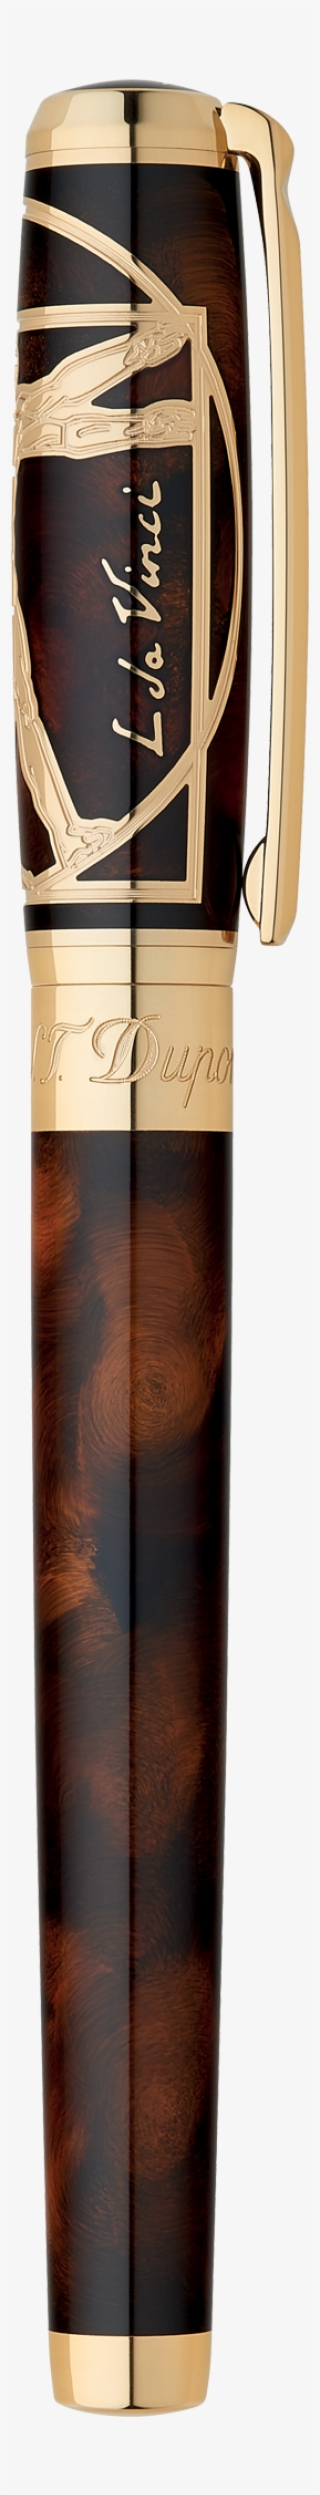 vitruvian man prestige natural lacquer rollerball pen, - dupont limited edition prestige leonardo da vinci vitruvian